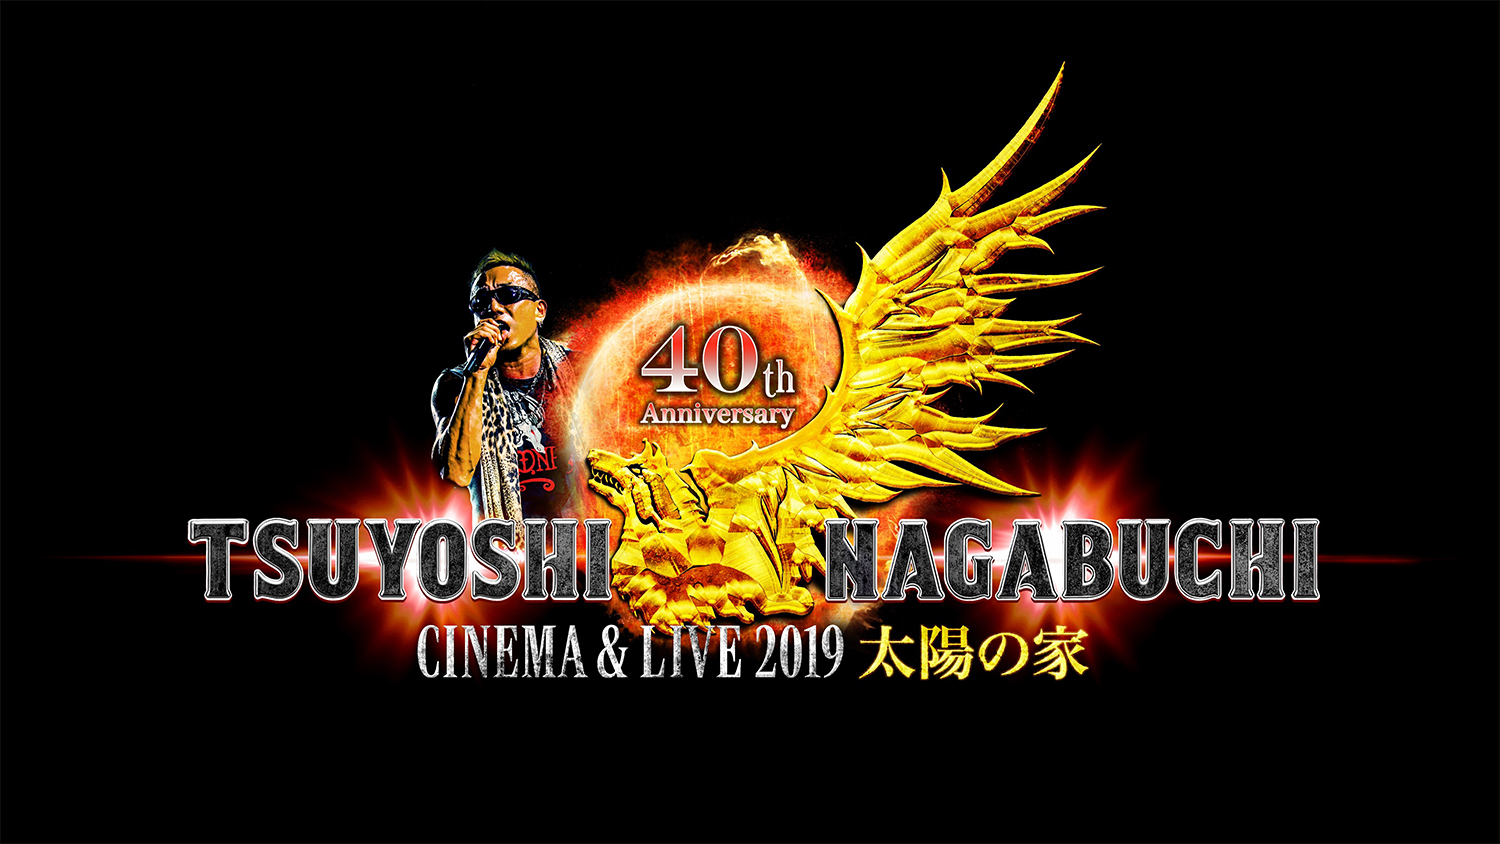 『TSUYOSHI NAGABUCHI CINEMA & LIVE 2019 太陽の家』